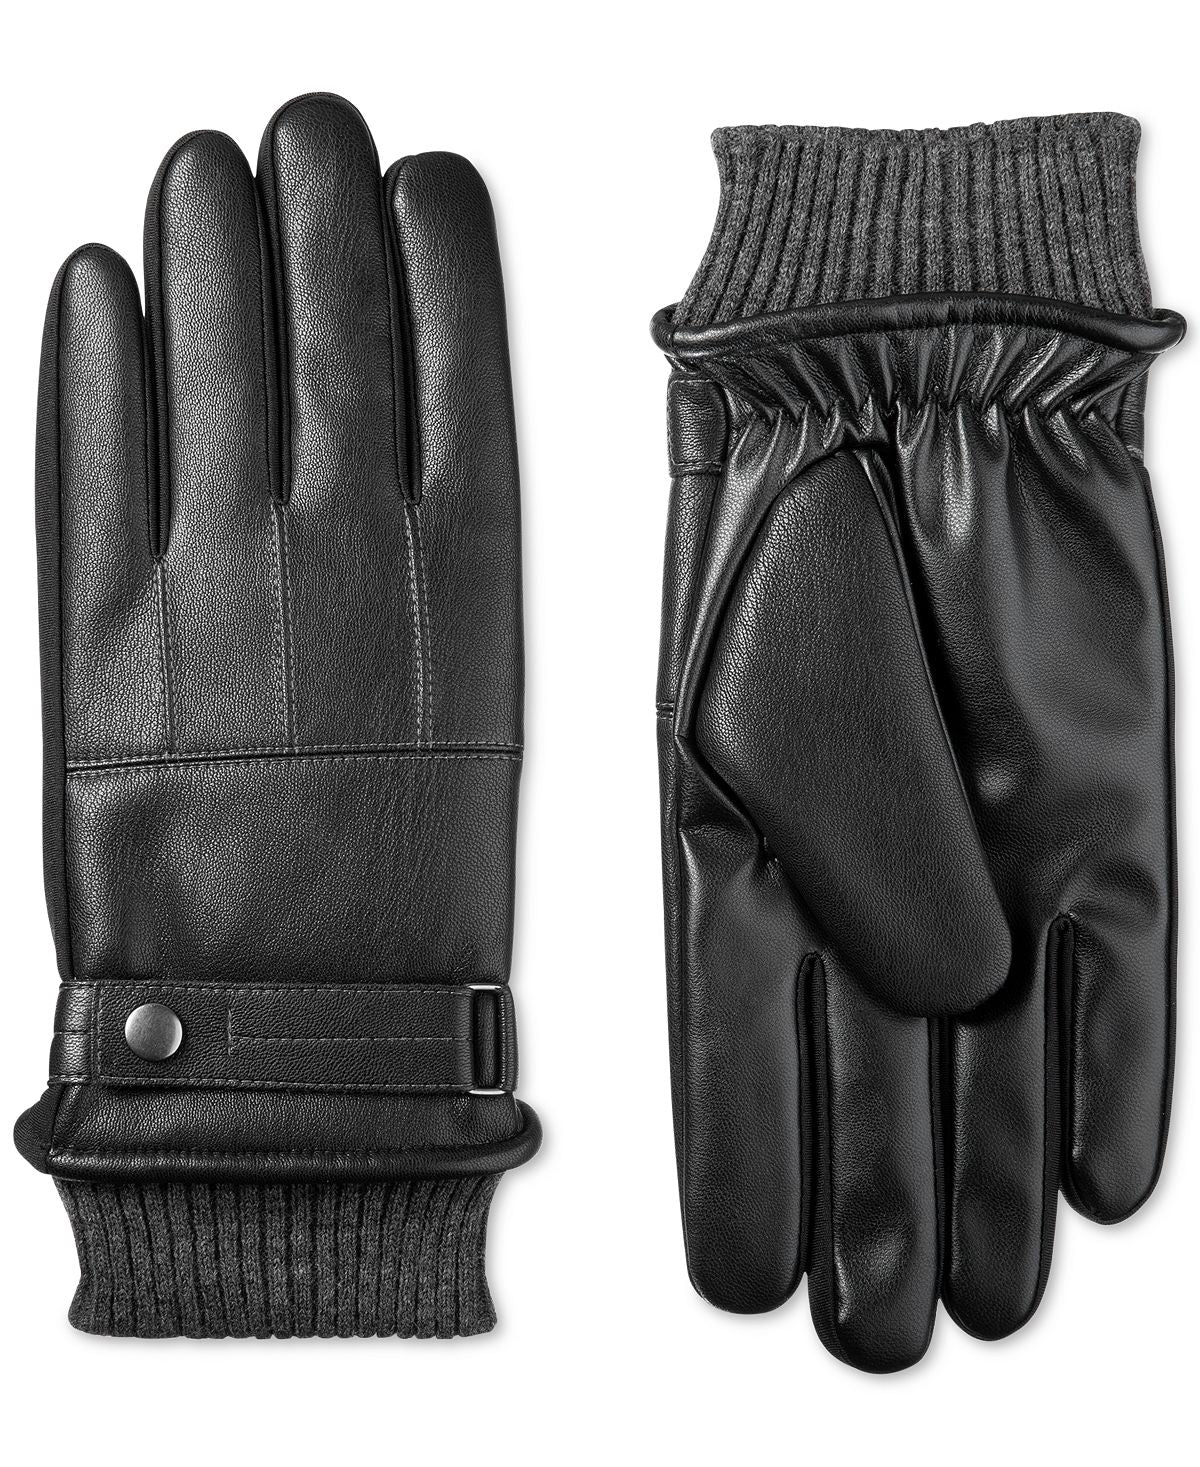 Isotoner Signature Faux-leather Sleekheat Gloves Black